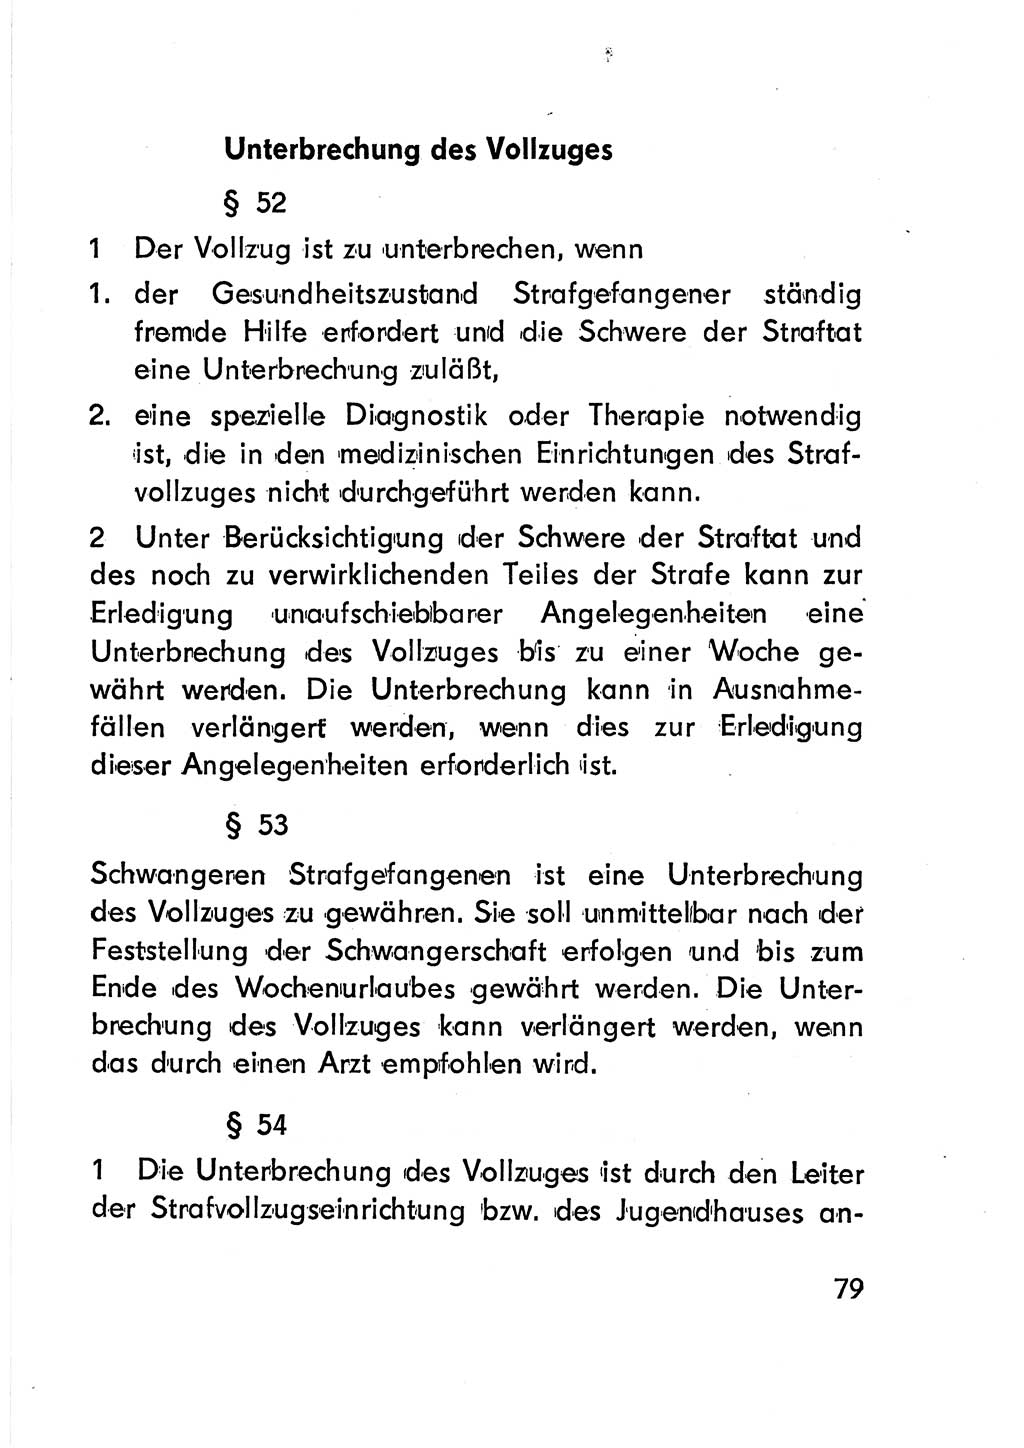 Gesetz über den Vollzug der Strafen mit Freiheitsentzug (Strafvollzugsgesetz) - StVG - [Deutsche Demokratische Republik (DDR)] 1977, Seite 79 (StVG DDR 1977, S. 79)